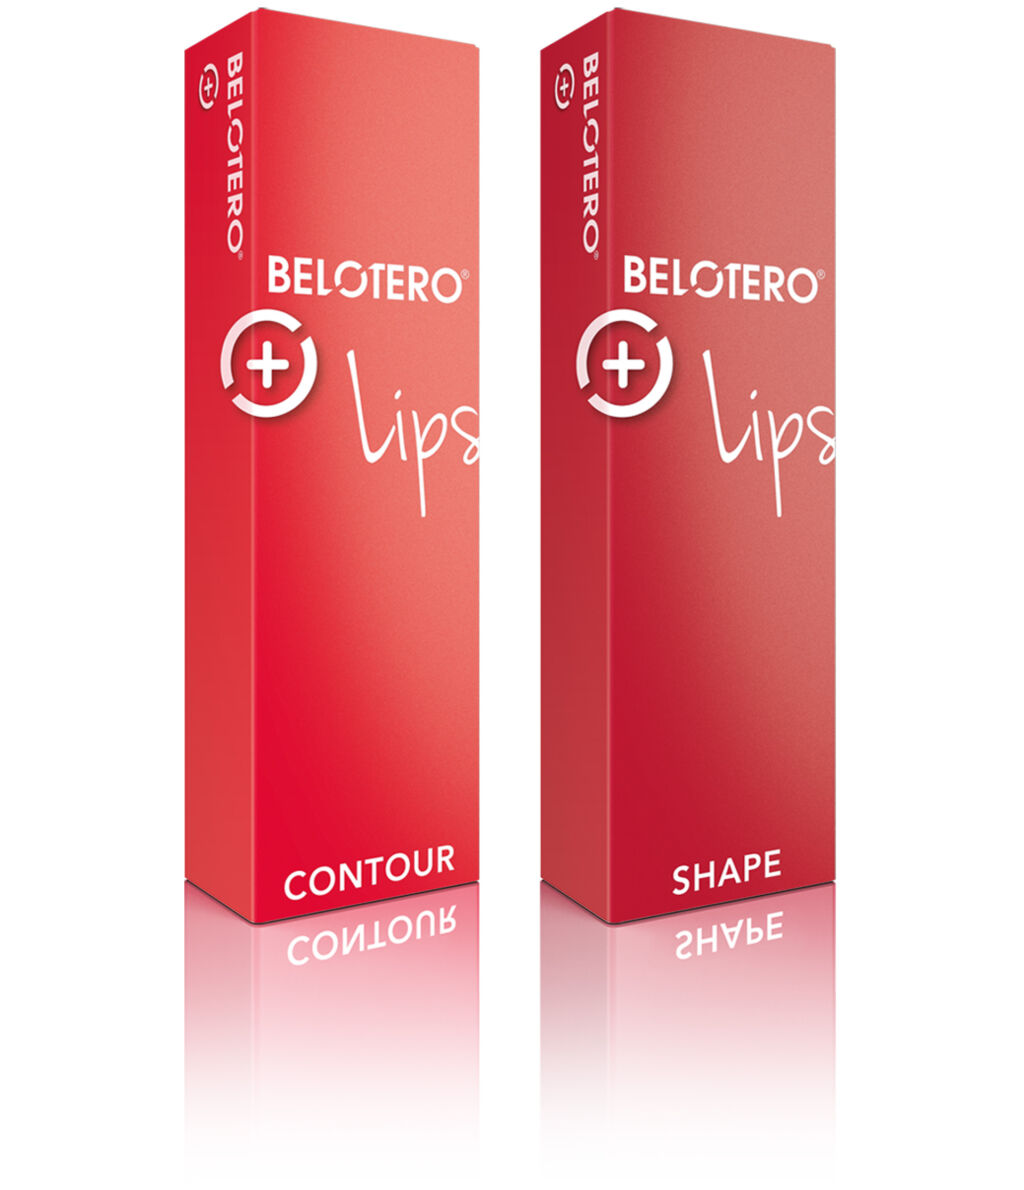 Rote Verpackungen der Belotero® lips-Produkte.